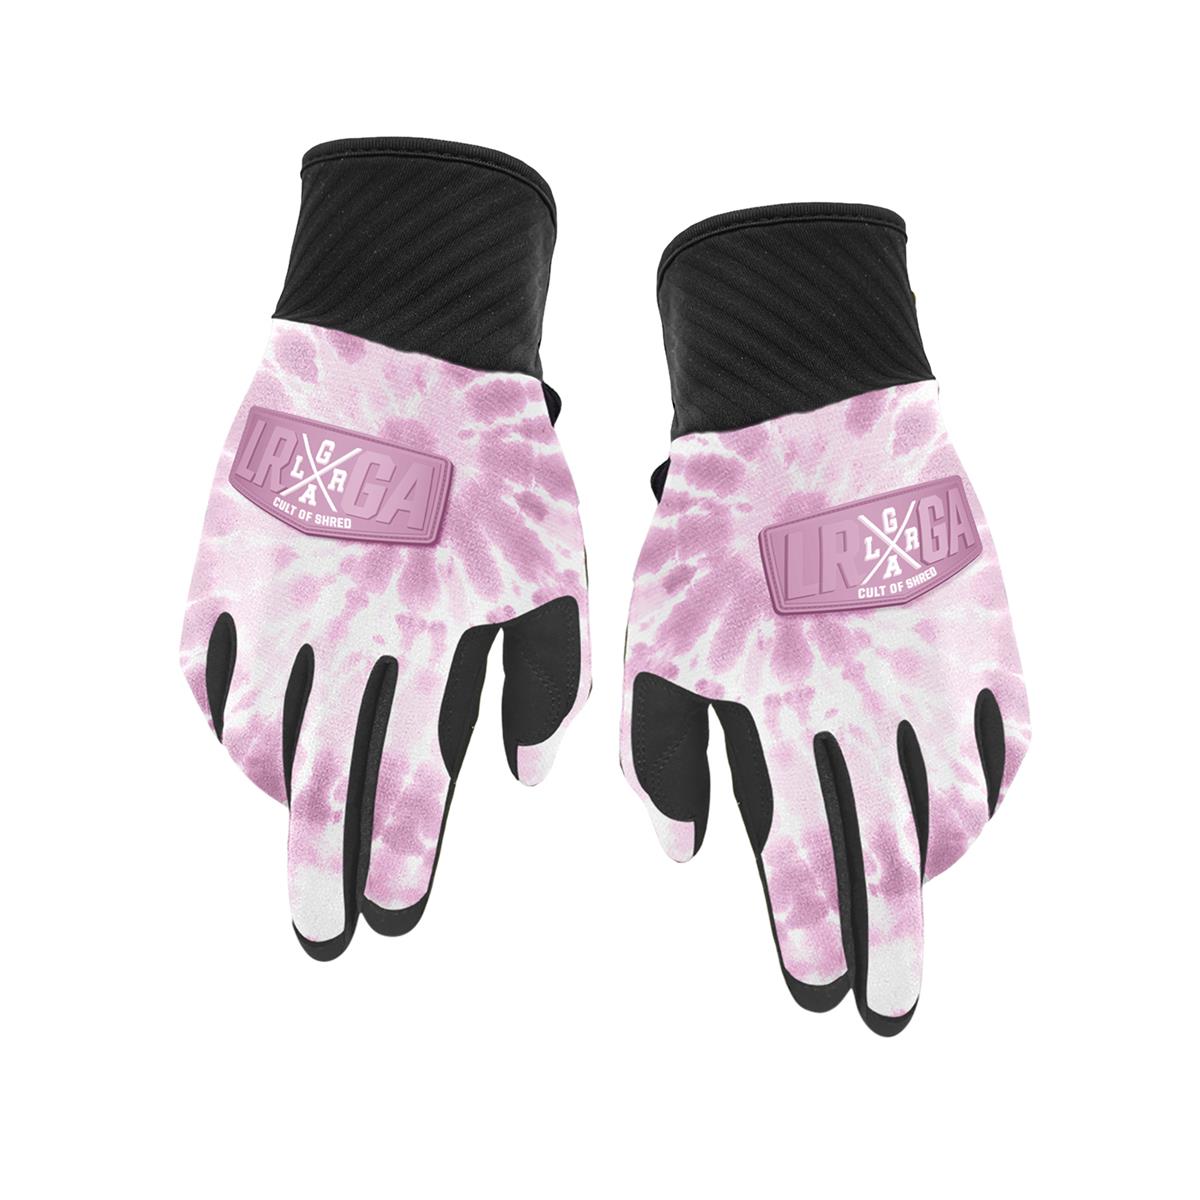 Loose Riders MTB-Handschuhe Freeride Pink Tie Dye